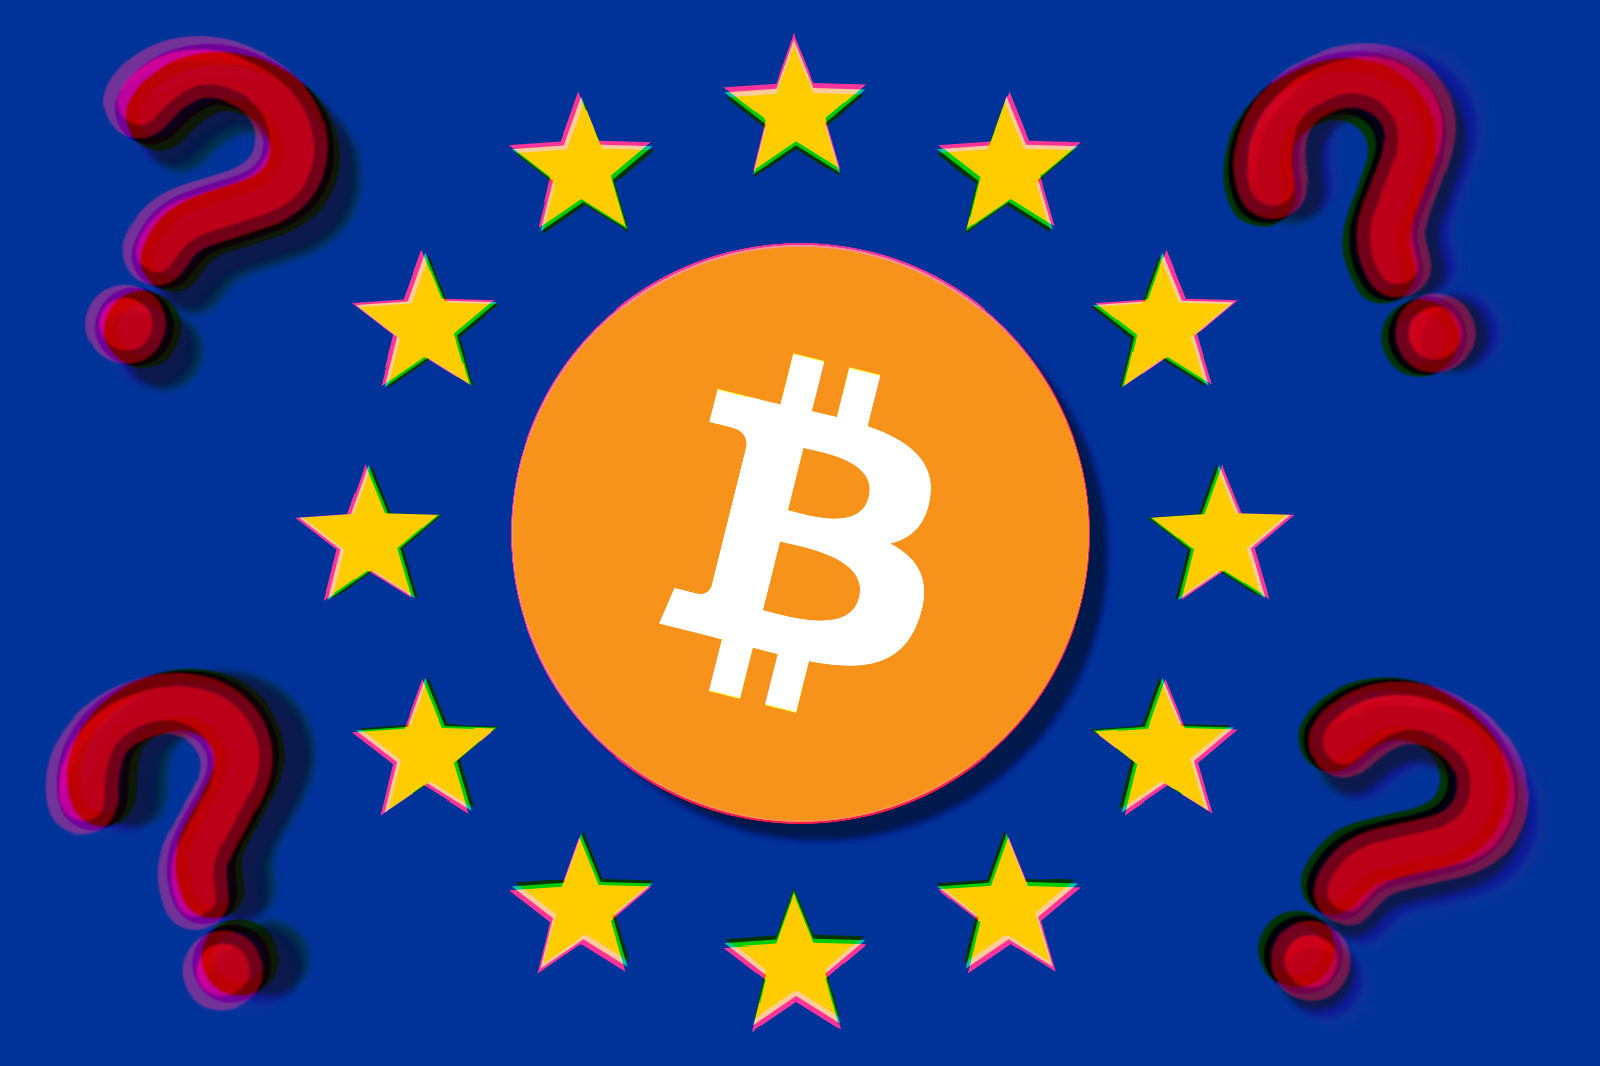 L’EU regolamenta le criptovalute: in arrivo il ban di Bitcoin?